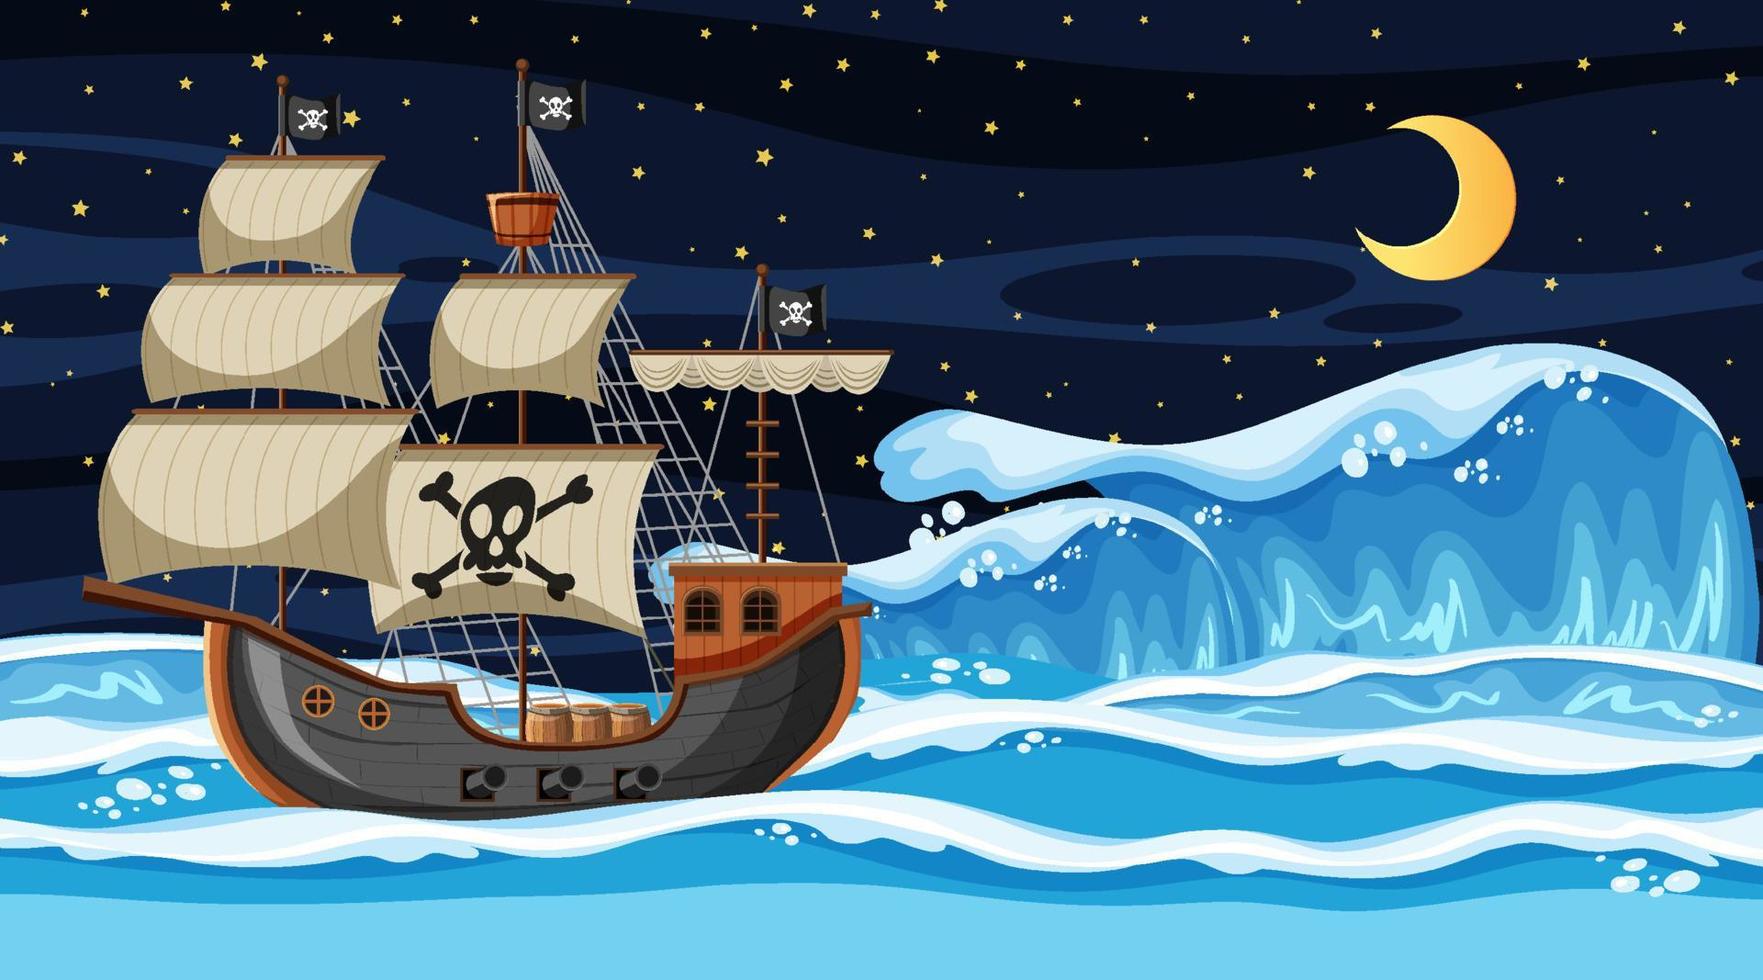 oceaanscène 's nachts met piratenschip in cartoon-stijl vector